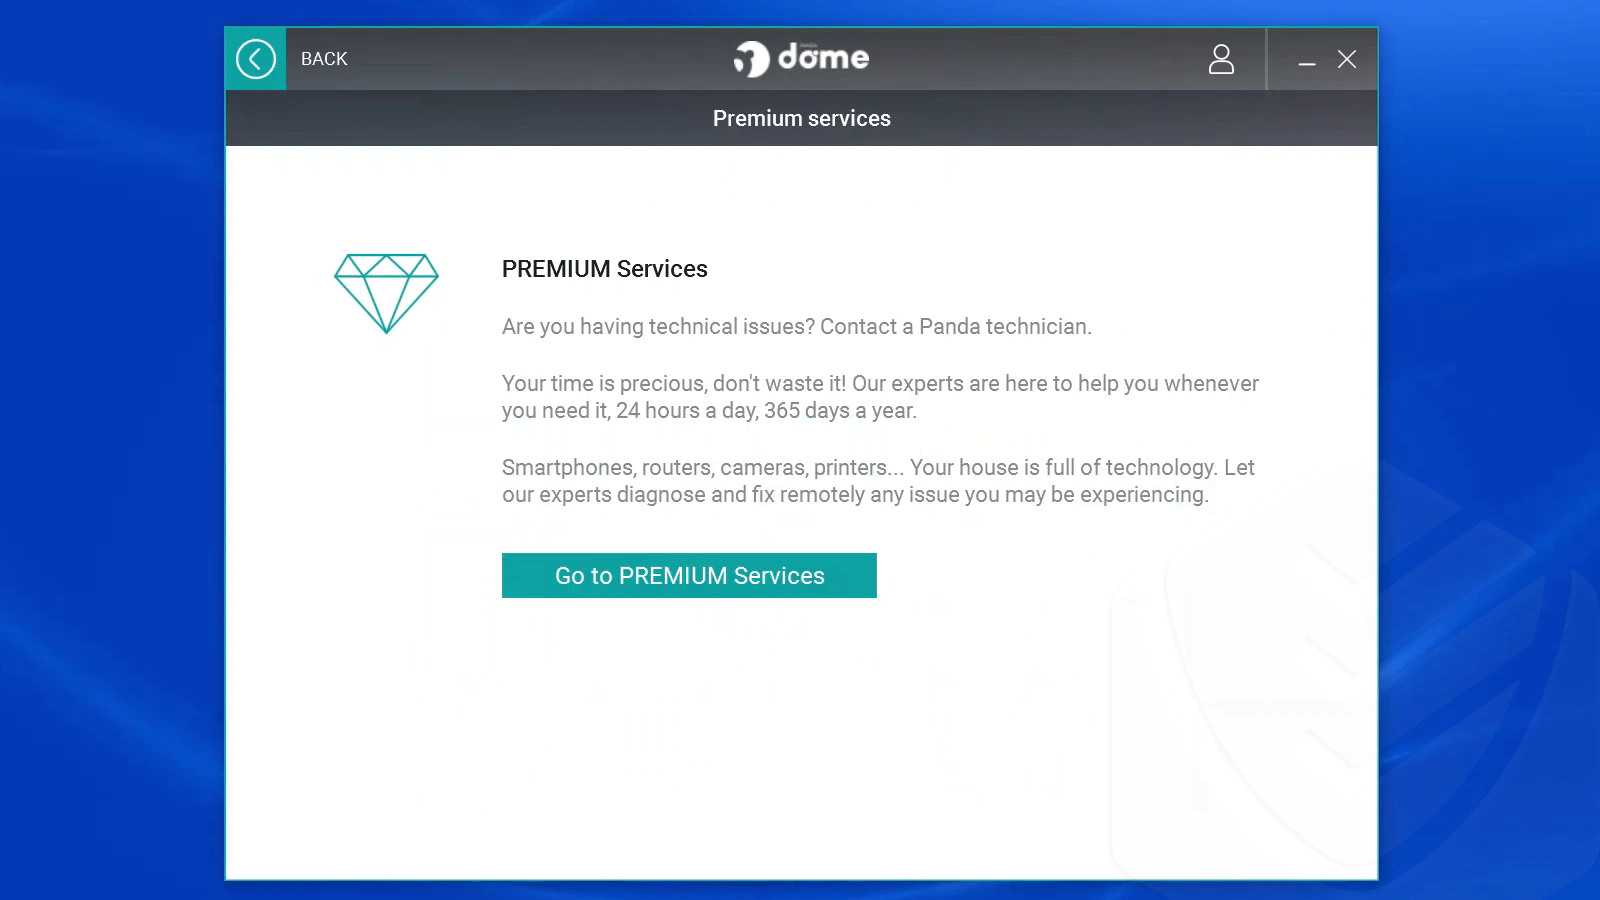 
Panda Services Premium